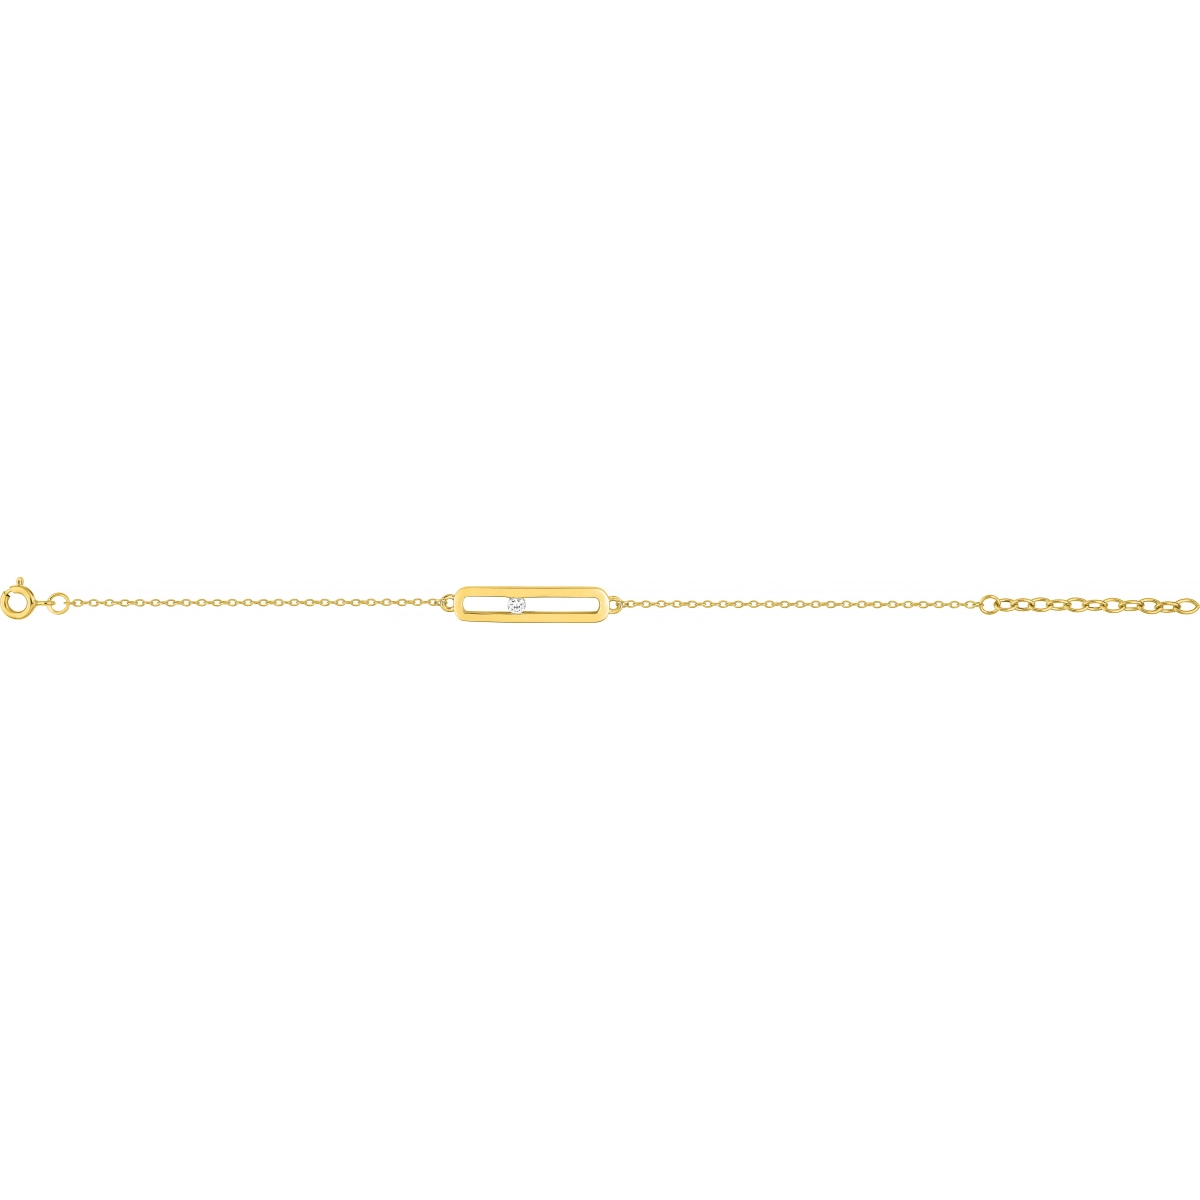 Bracelet w. cz gold plated Brass  Lua Blanca  PSBQ41Z18.0